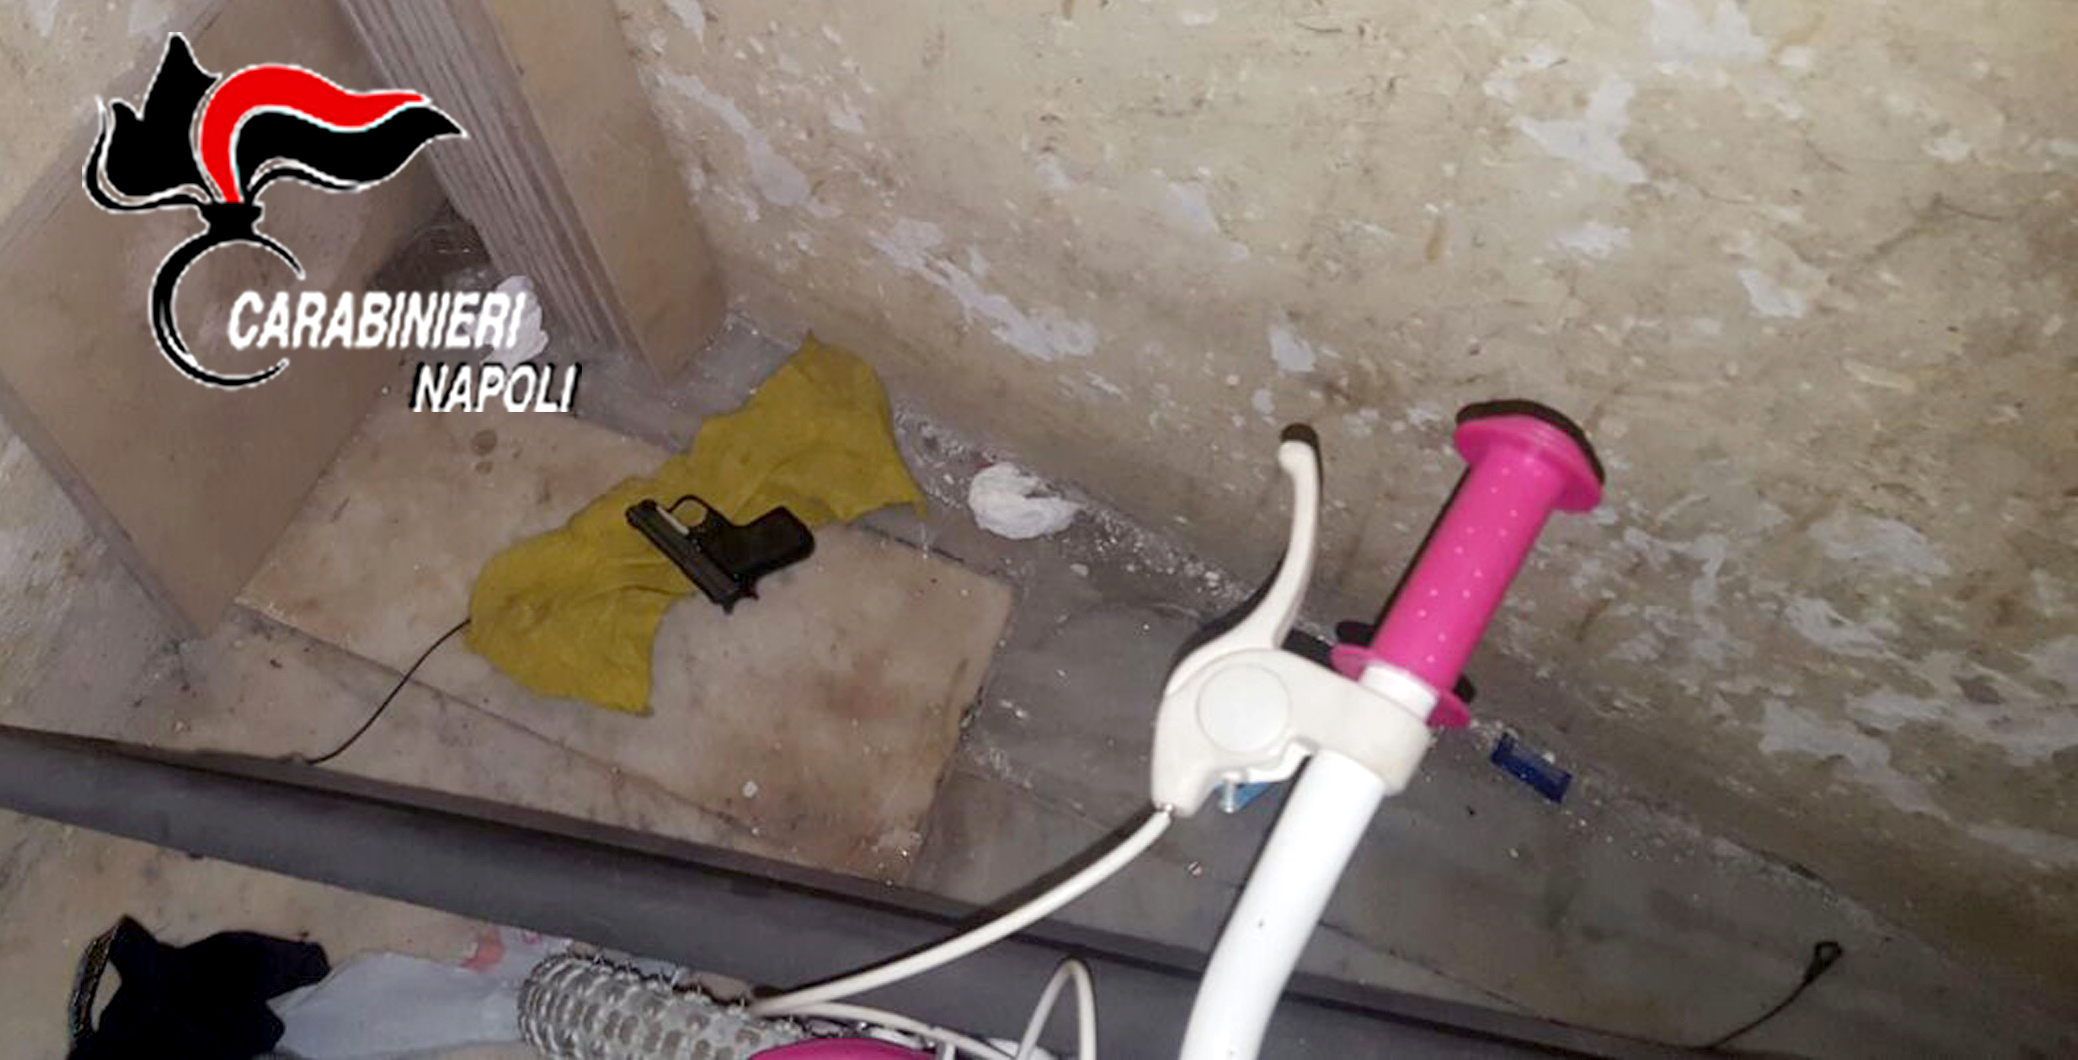  Napoli, pistola nascosta nelle scale di un condominio alla Pignasecca